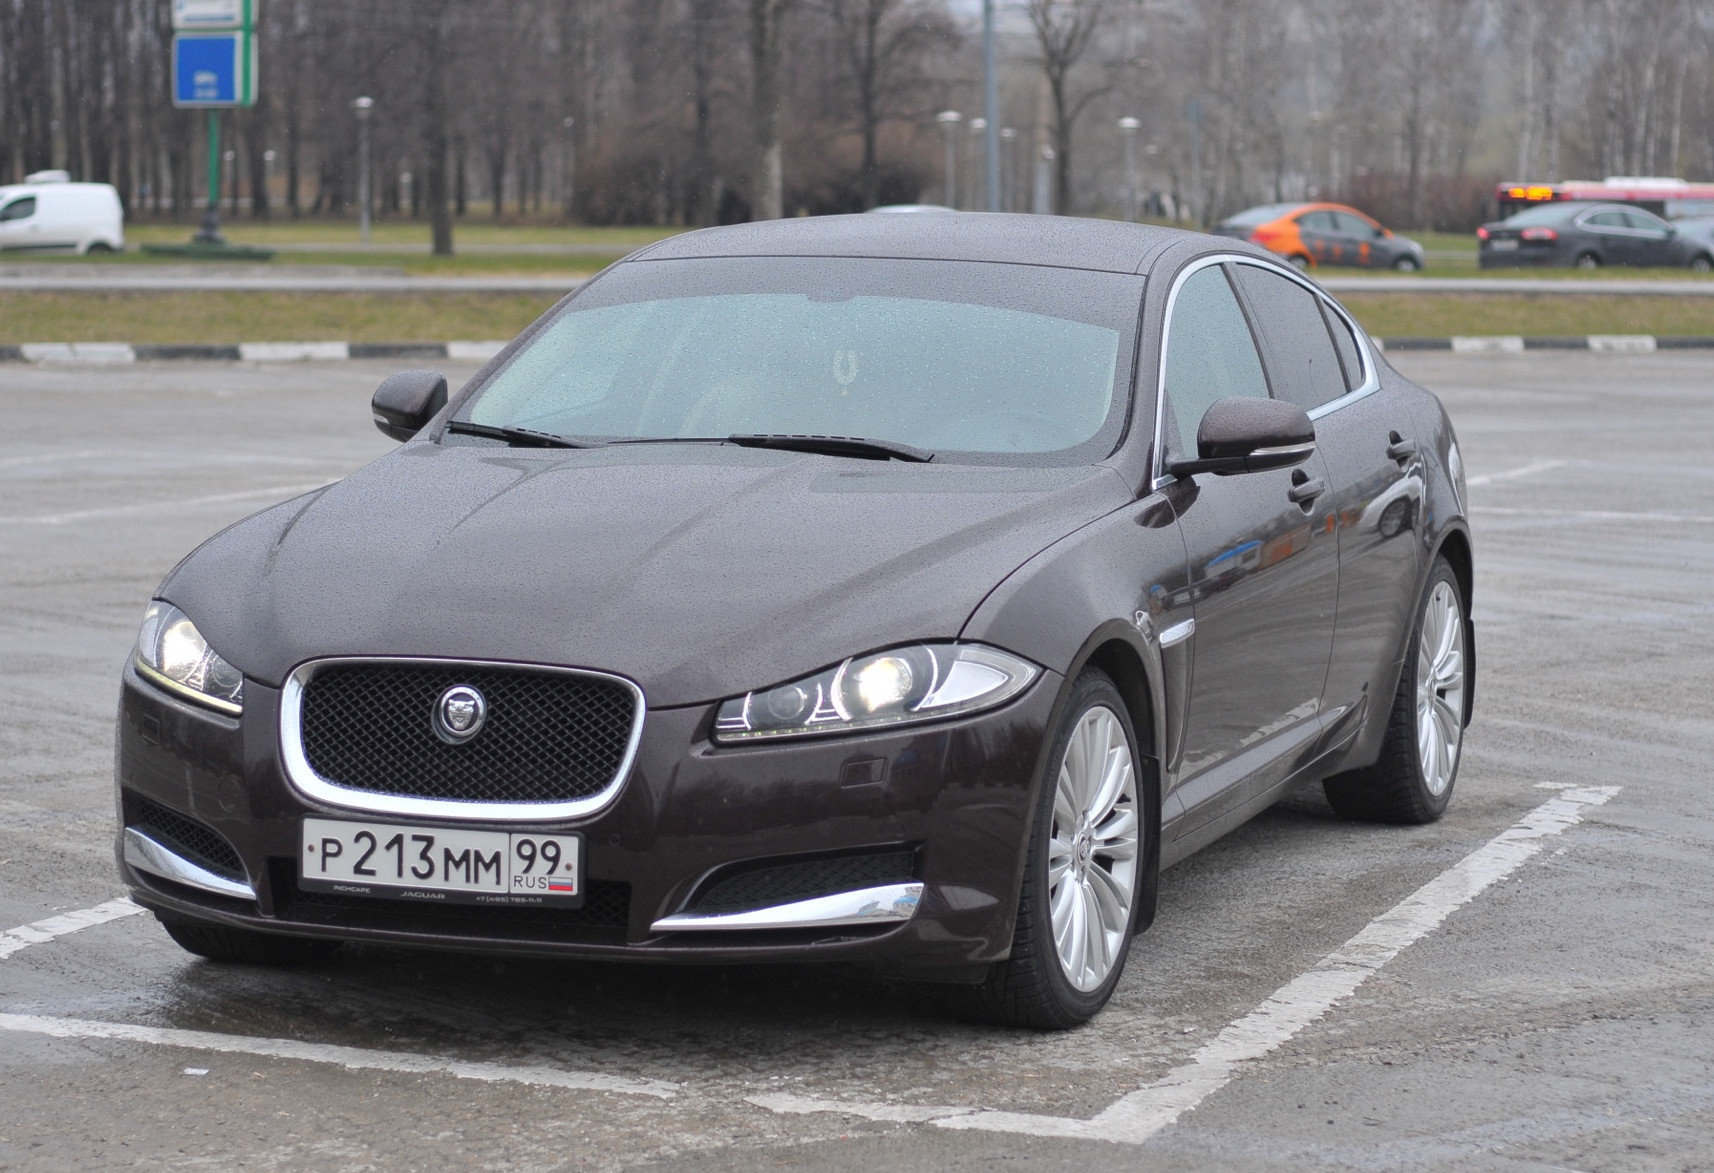 Аренда jaguar xf бизнес класса 2012 года в городе Москва Орехово от 5272 руб./сутки, задний привод, двигатель: дизель, объем 3 литра, ОСАГО (Впишу в полис), без водителя, недорого - RentRide